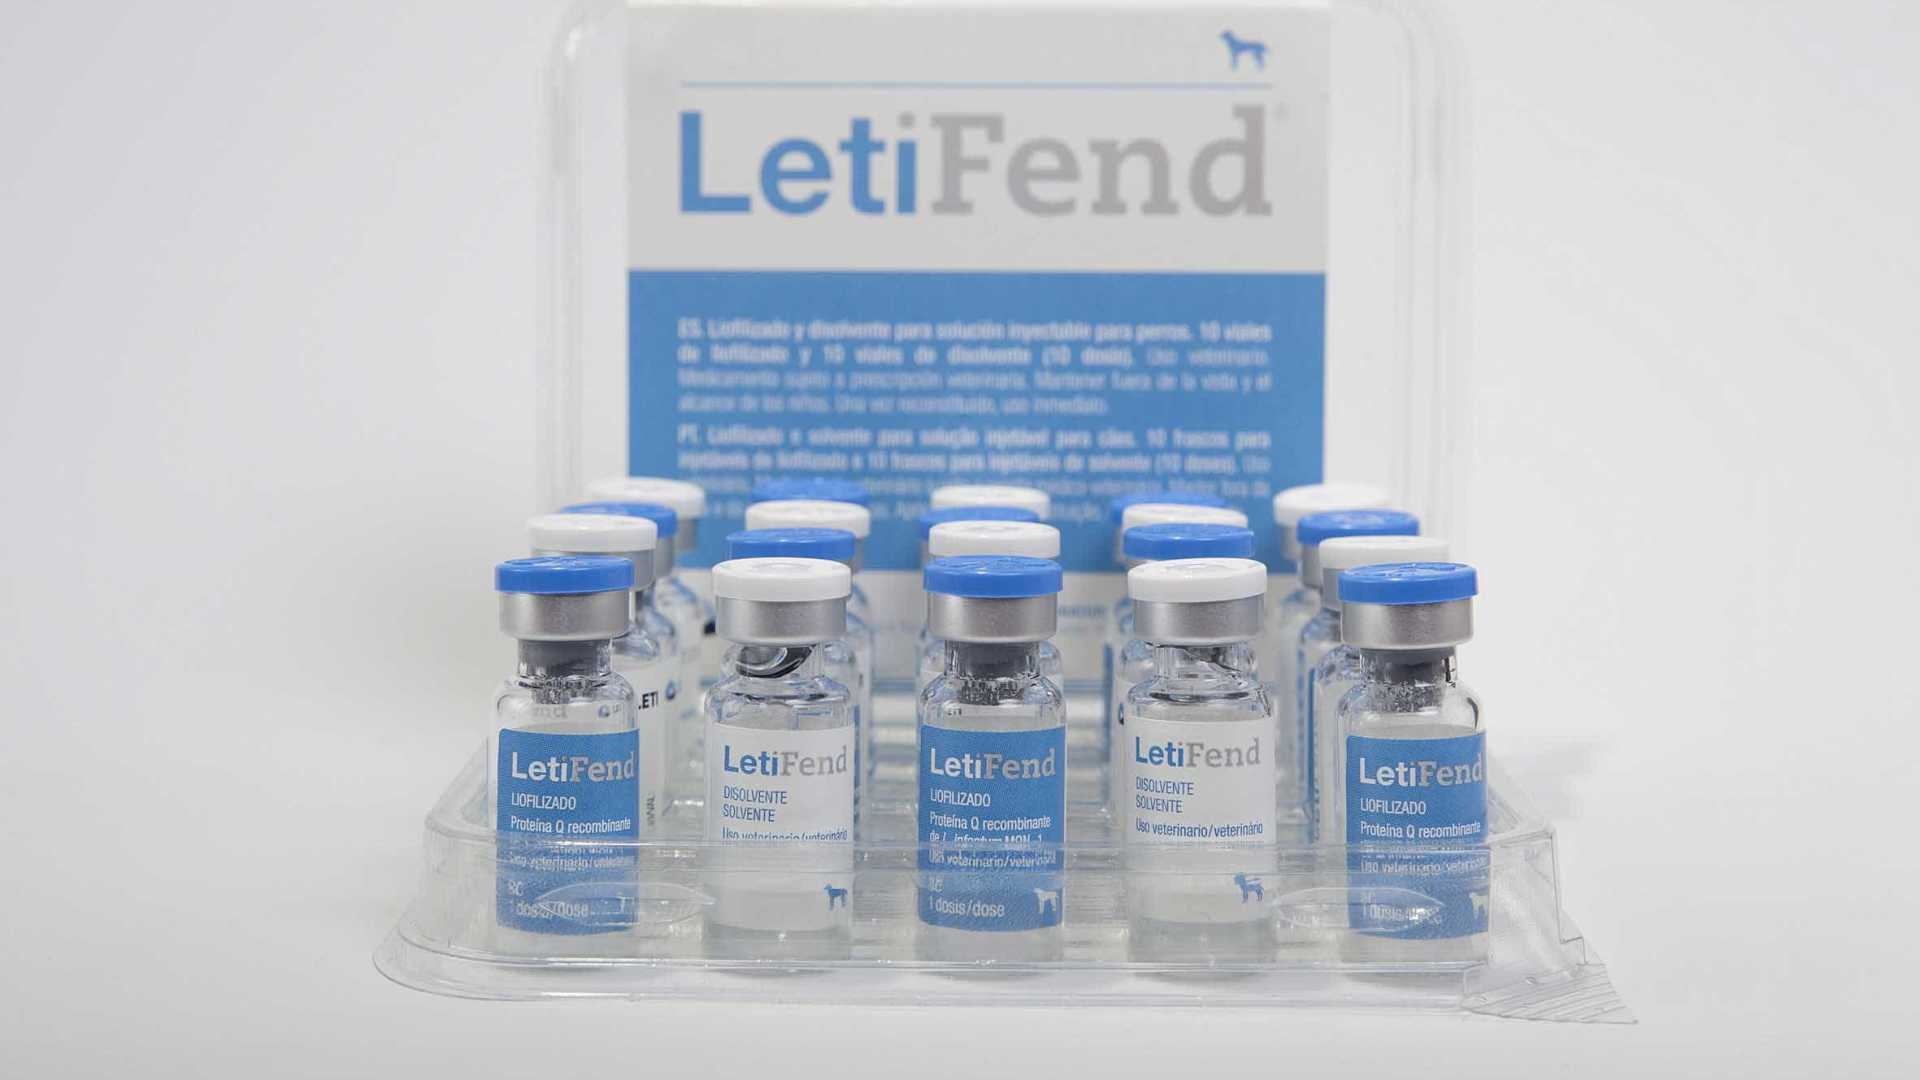 Nova vacina contra a Leishmaniose no mercado?